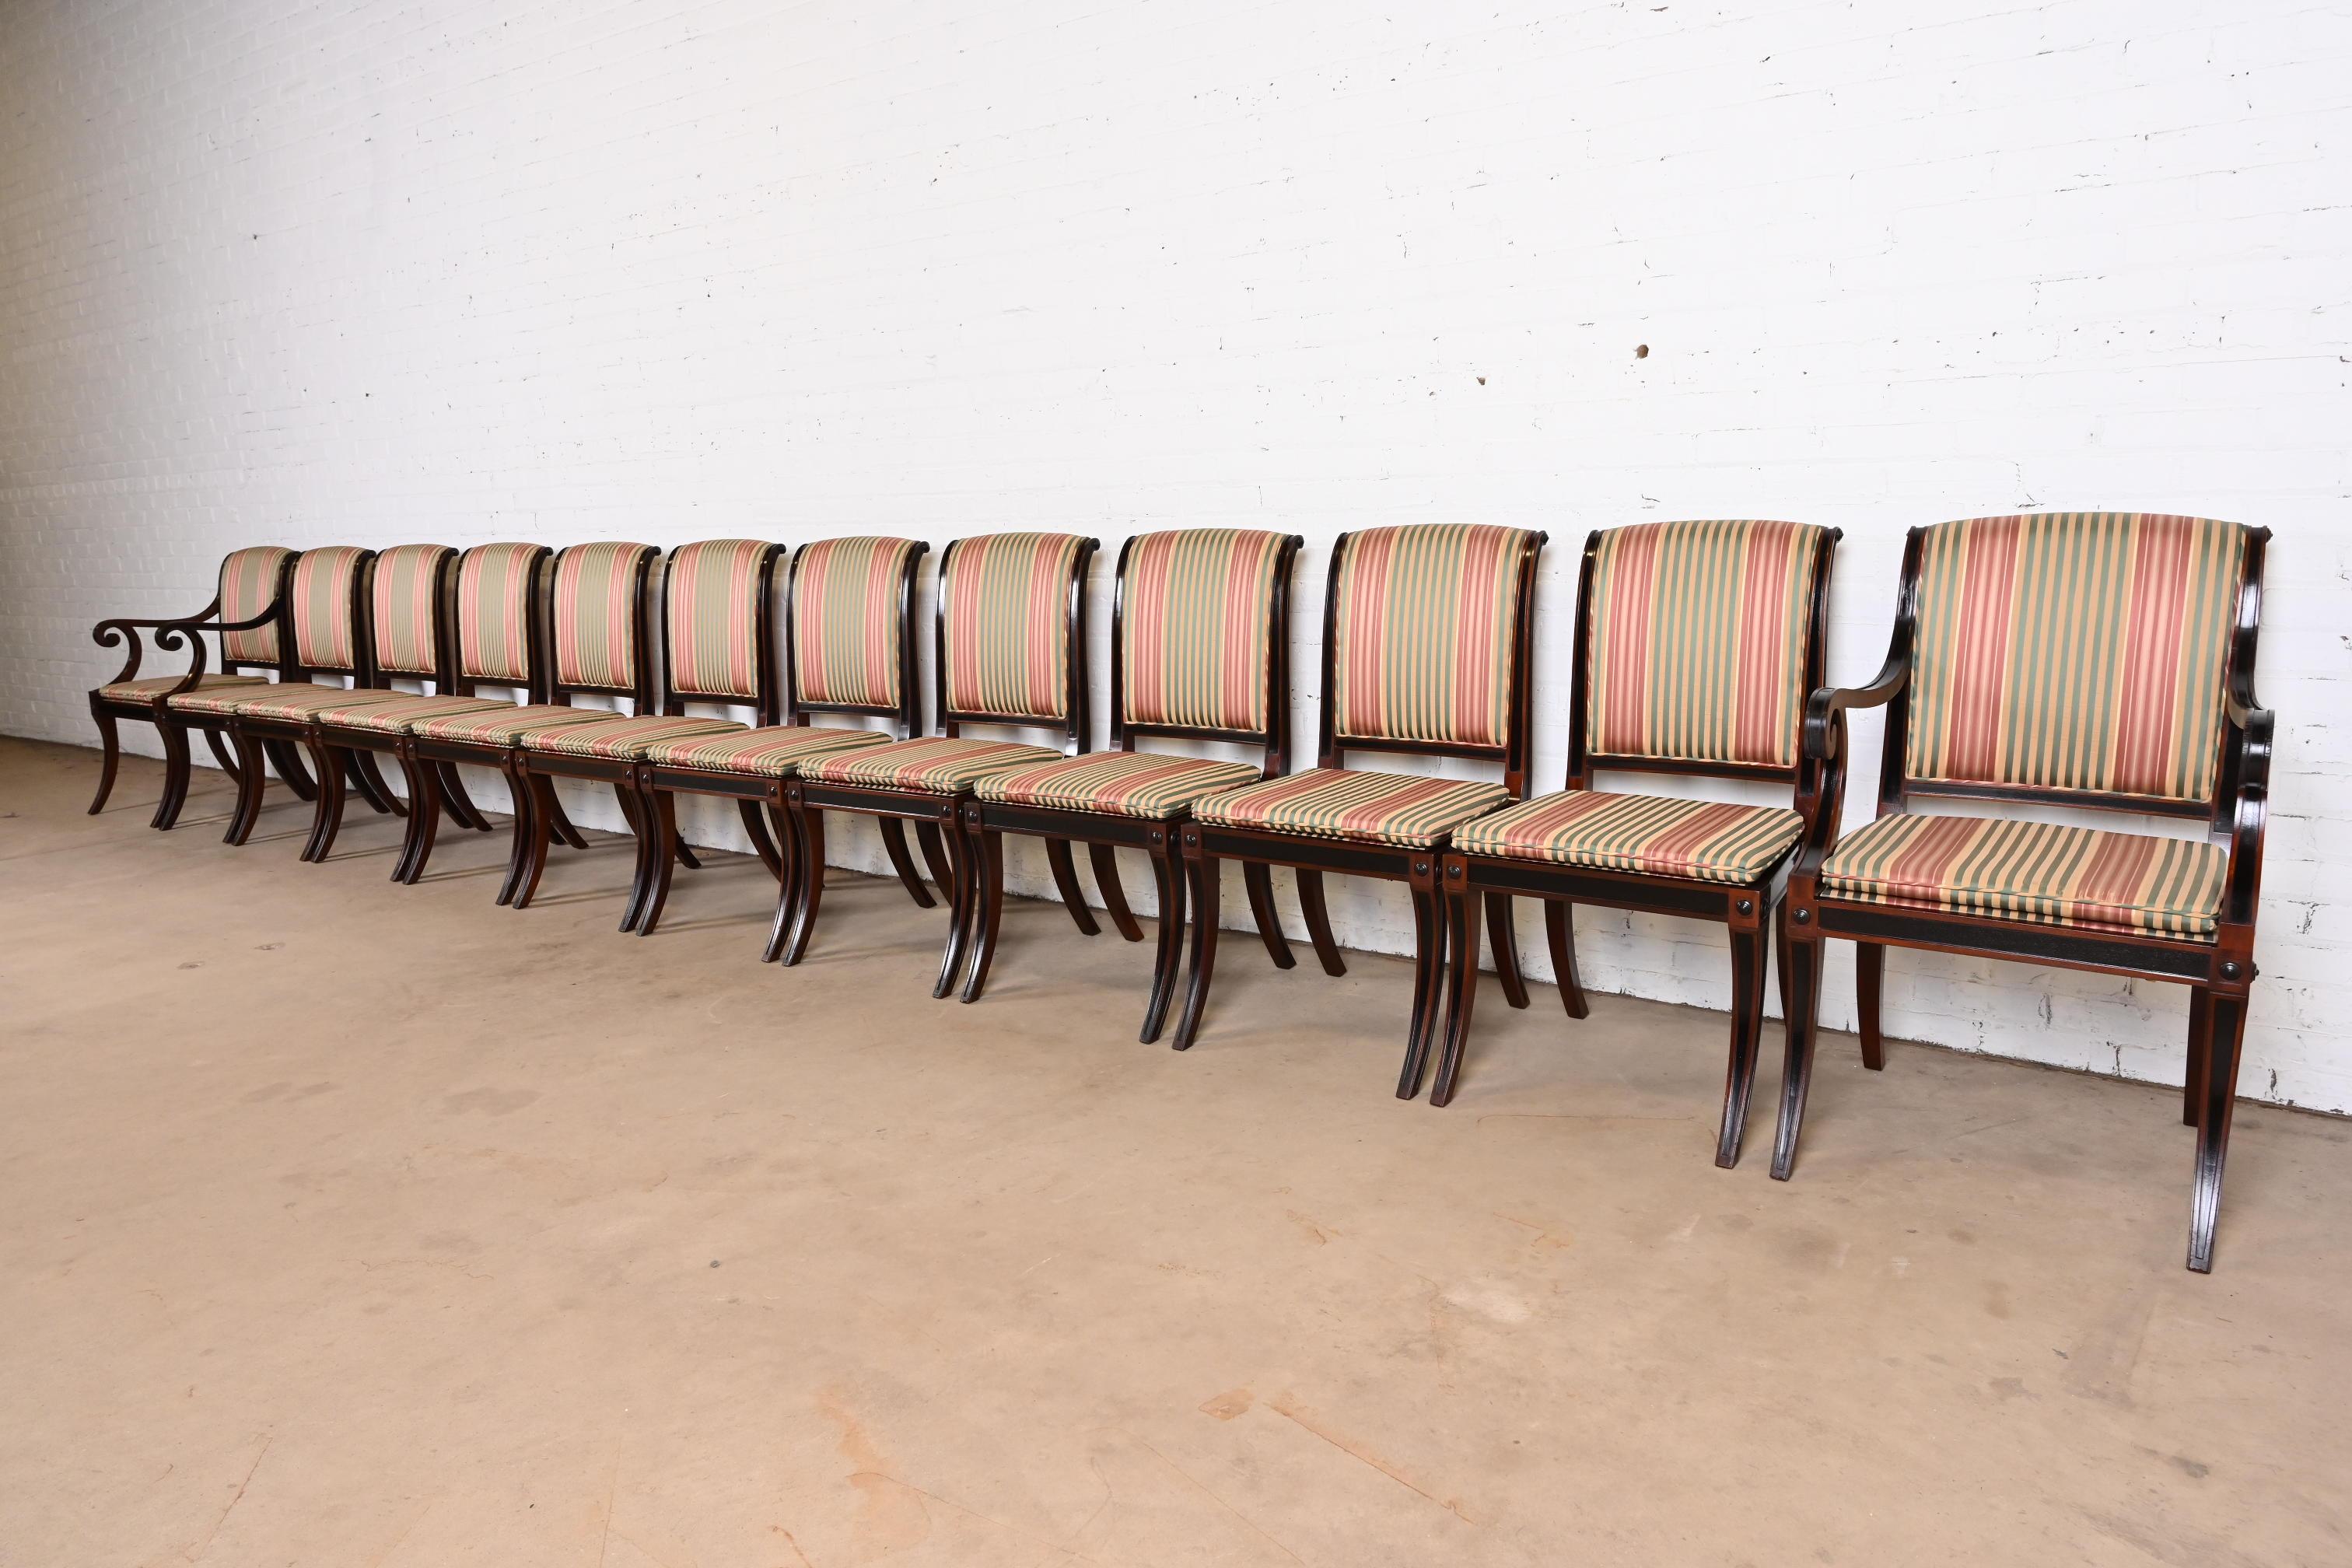 Ein prächtiger Satz von zwölf Esszimmerstühlen im Regency-, neoklassischen oder Empire-Stil

Von Baker Furniture

USA, Ende des 20. Jahrhunderts

Geschnitztes Mahagoni und ebonisierte Rahmen, mit gestreifter